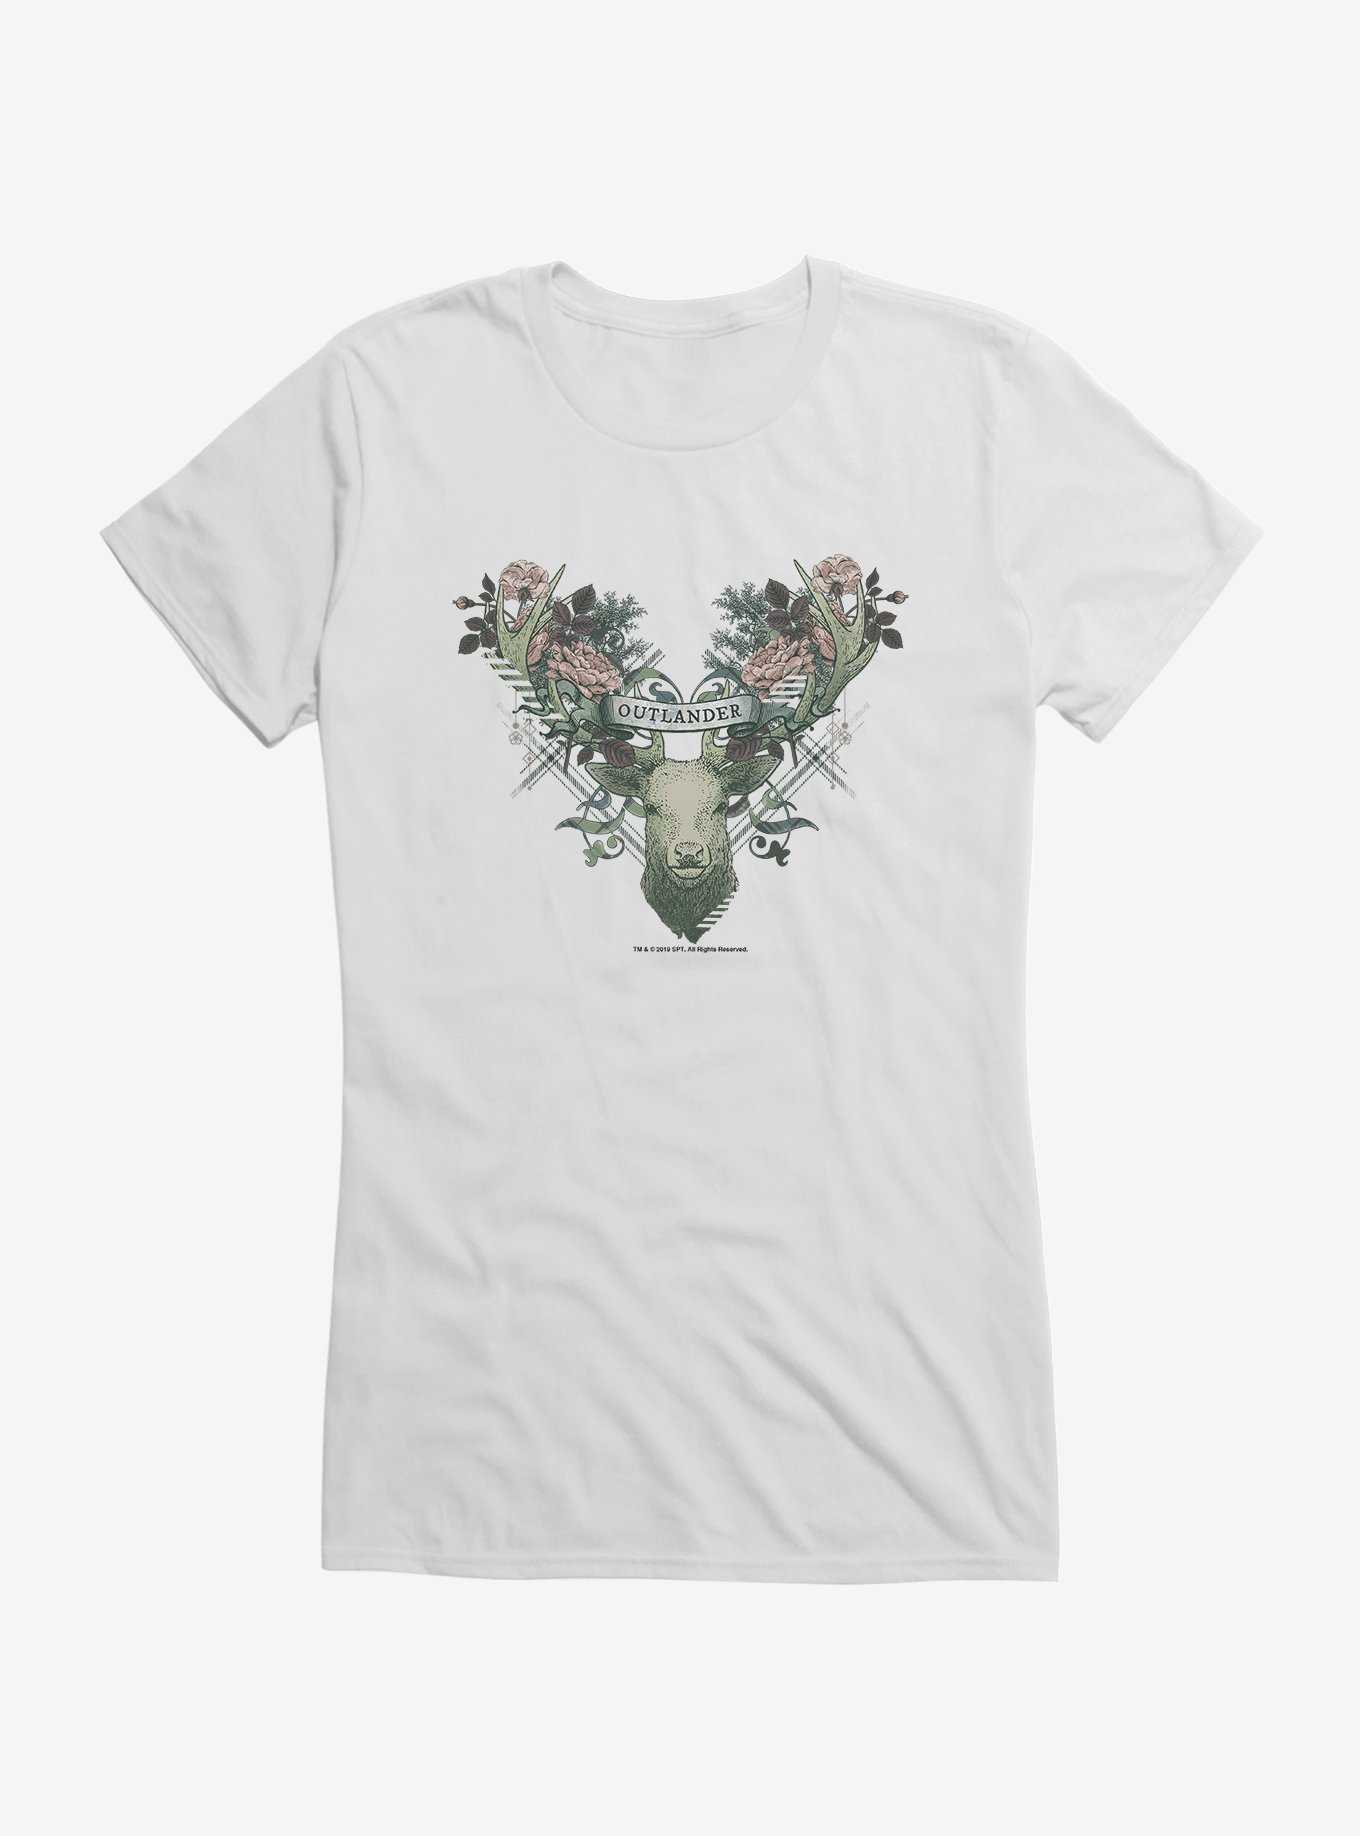 Outlander Floral Deer Girls T-Shirt, , hi-res